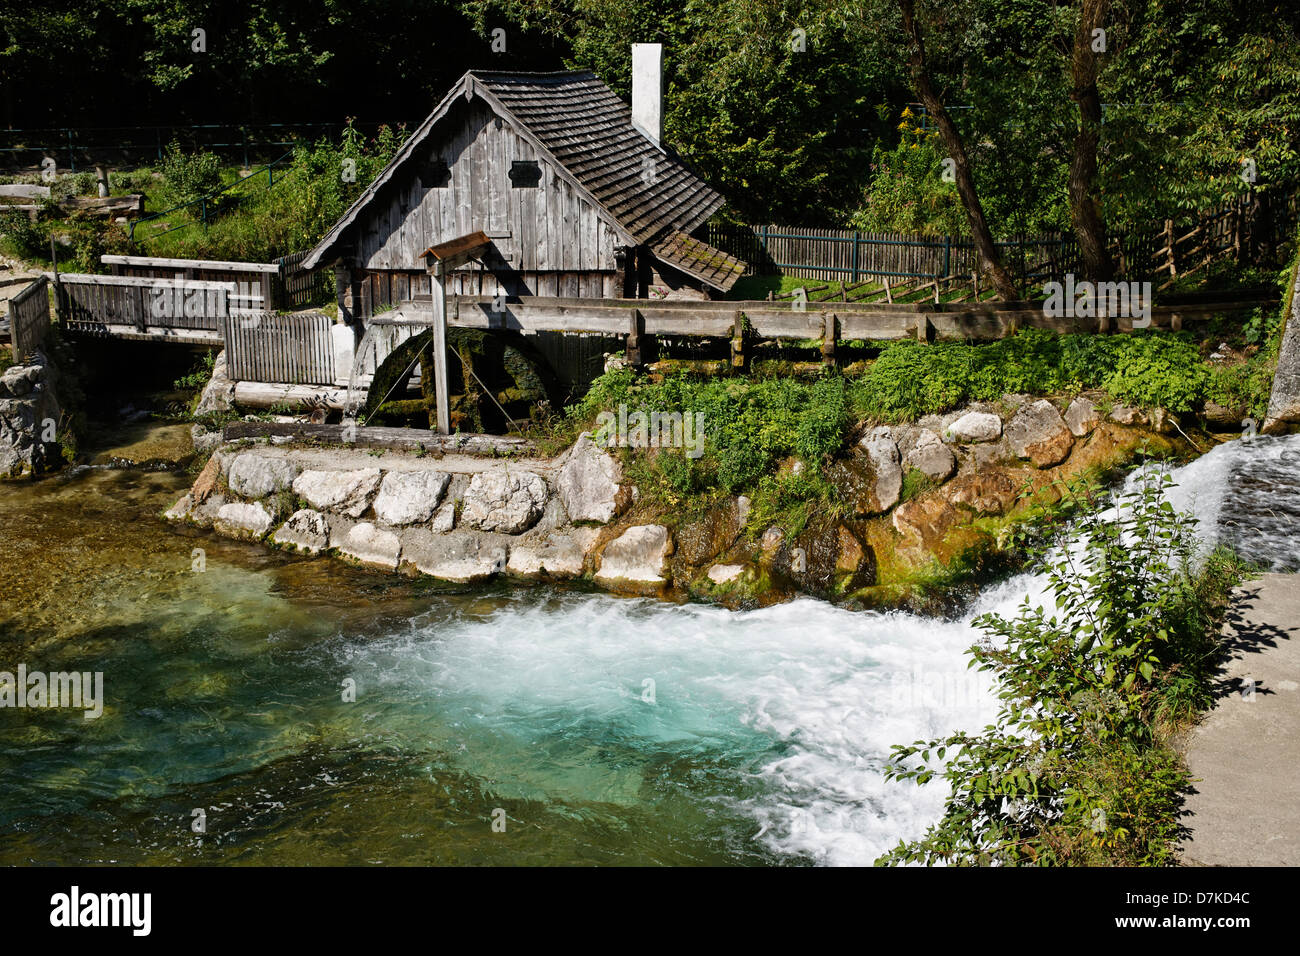 Austria, Upper Austria, View of Katzensteiner Mill Stock Photo